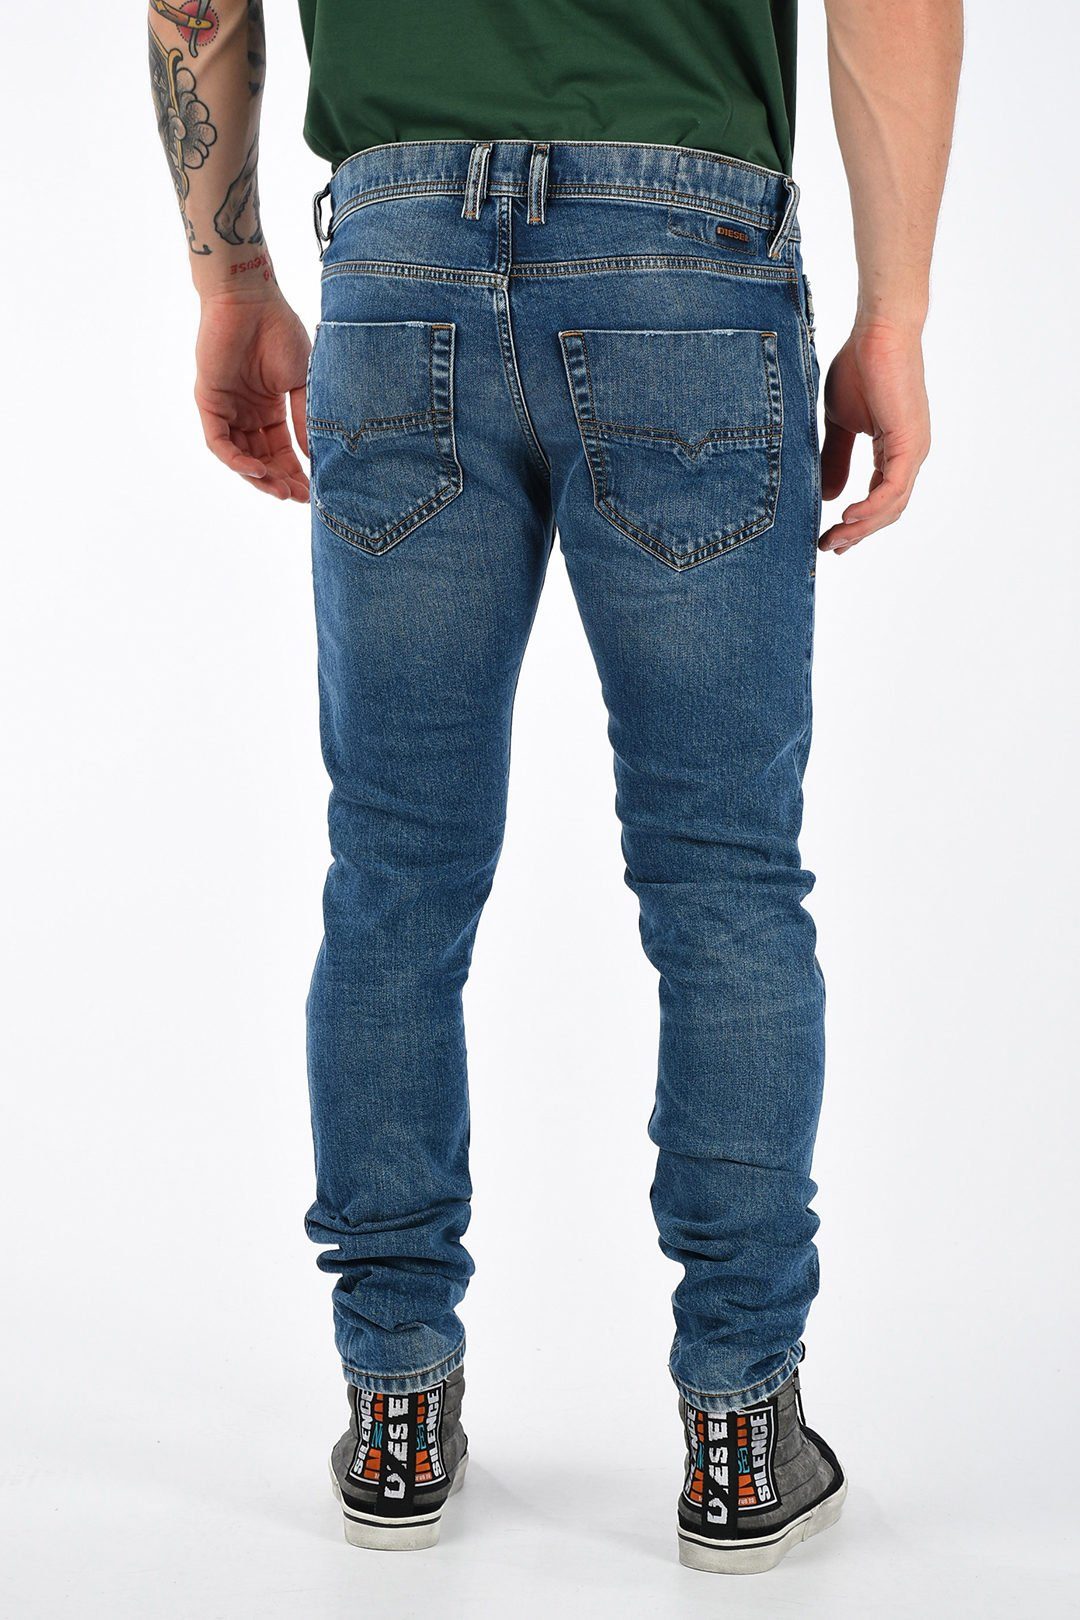 Länge: Herren Anteil, 084XT Diesel Regular Diesel Waist, mit 32 Tepphar Style, Stretch 5-Pocket Slim-fit-Jeans Jeans